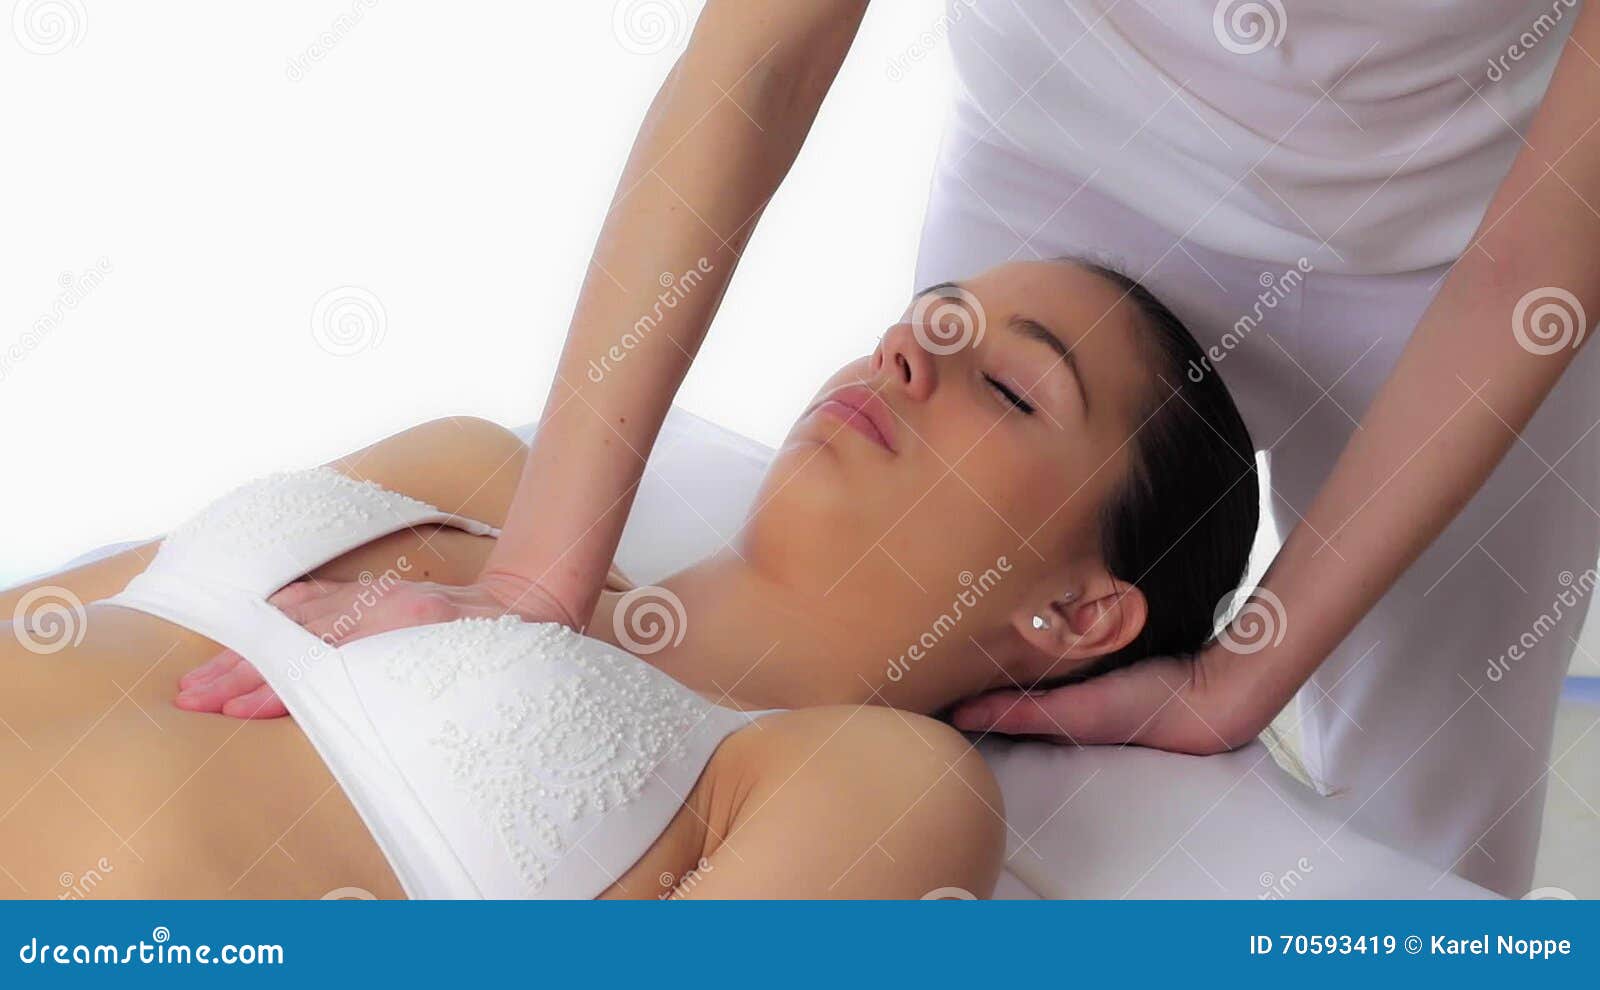 как массаж делают грудью фото 16